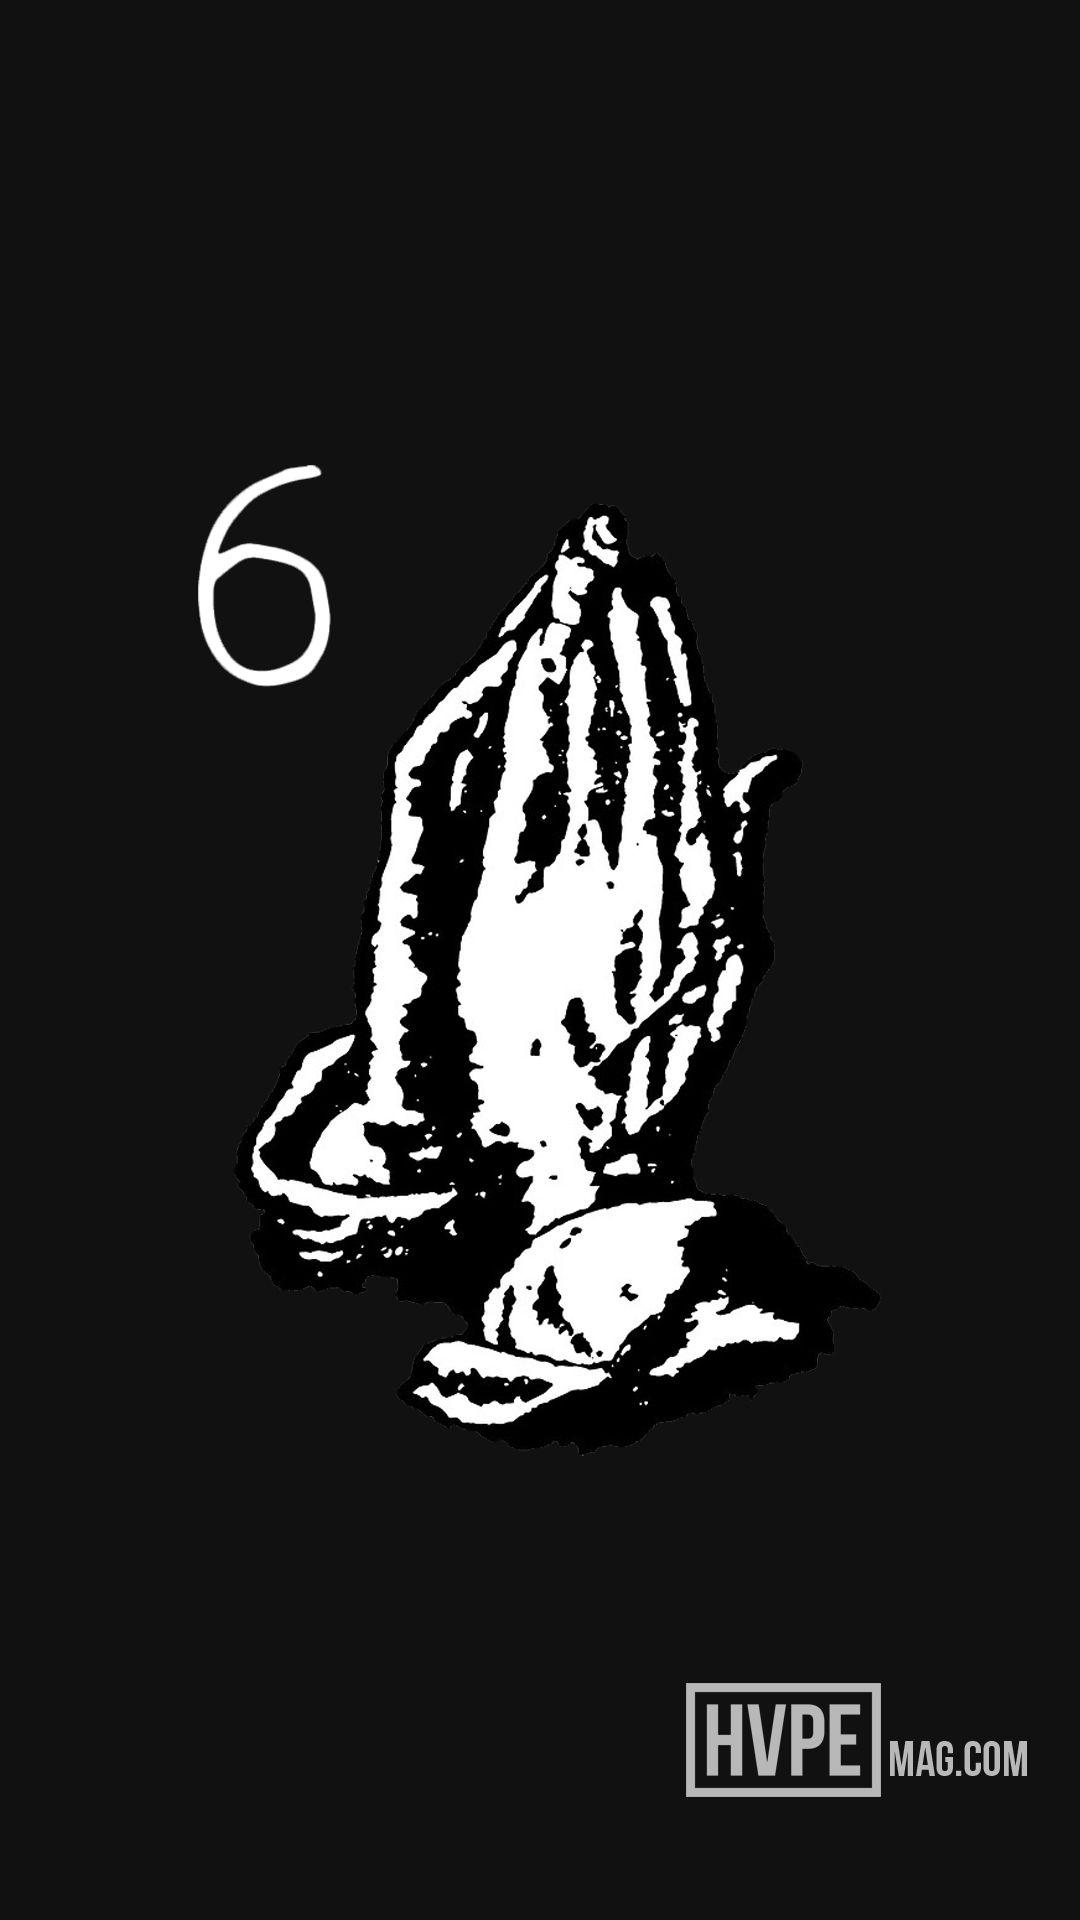 Drake Praying 6 God Wallpapers Top Free Drake Praying 6